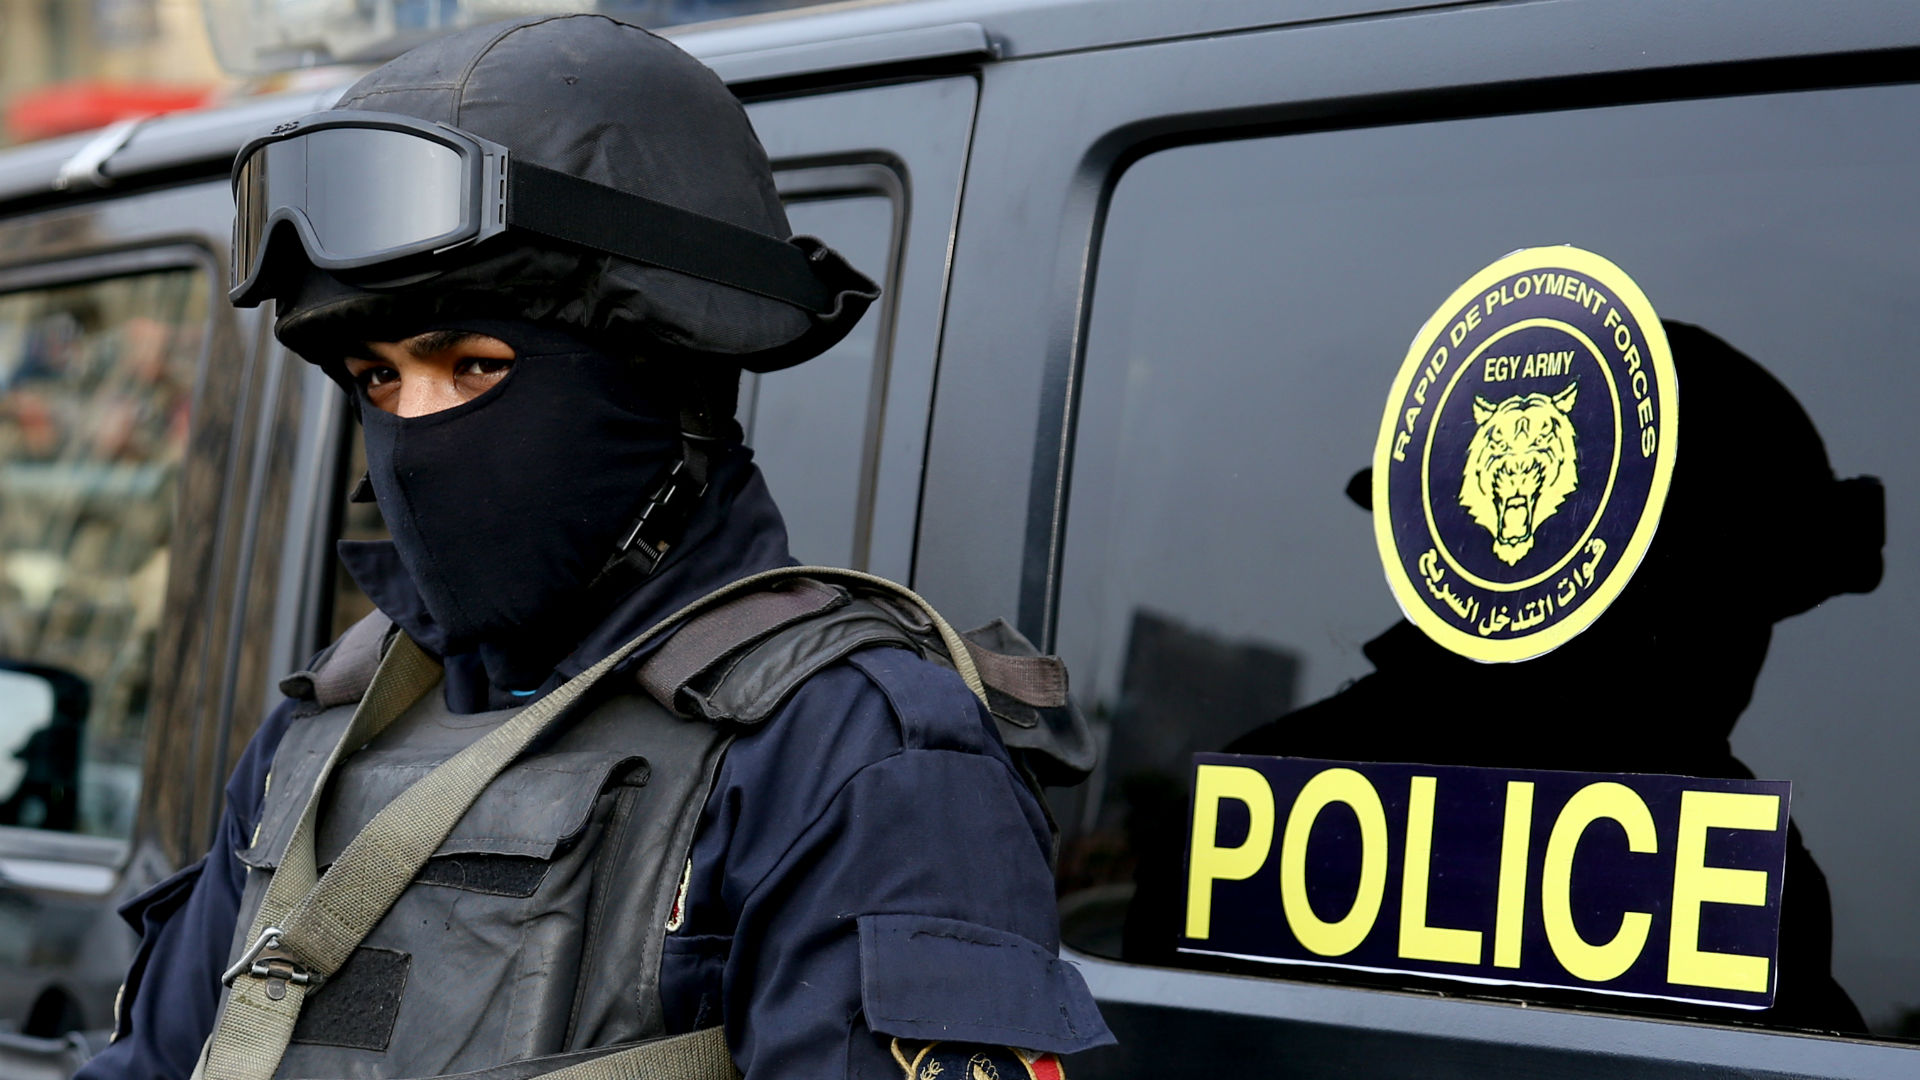 Αίγυπτος: Νεκροί δύο αστυνομικοί από βομβιστική επίθεση στην Αλεξάνδρεια